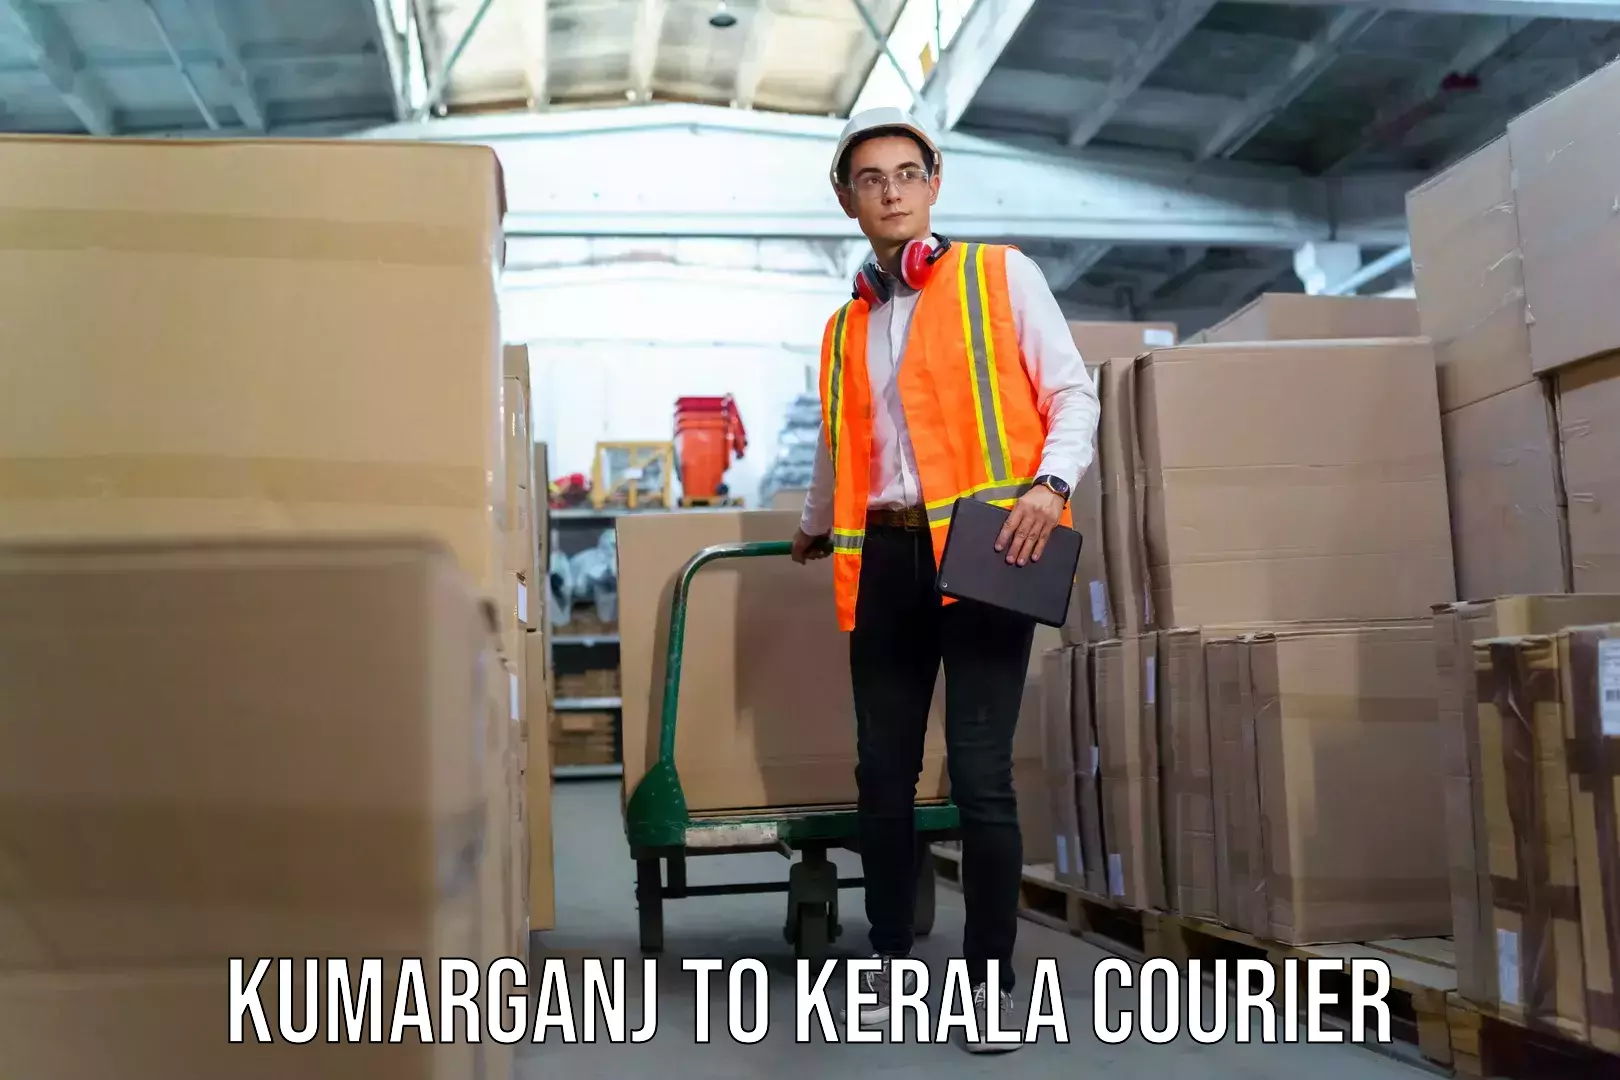 Baggage transport network Kumarganj to Kerala